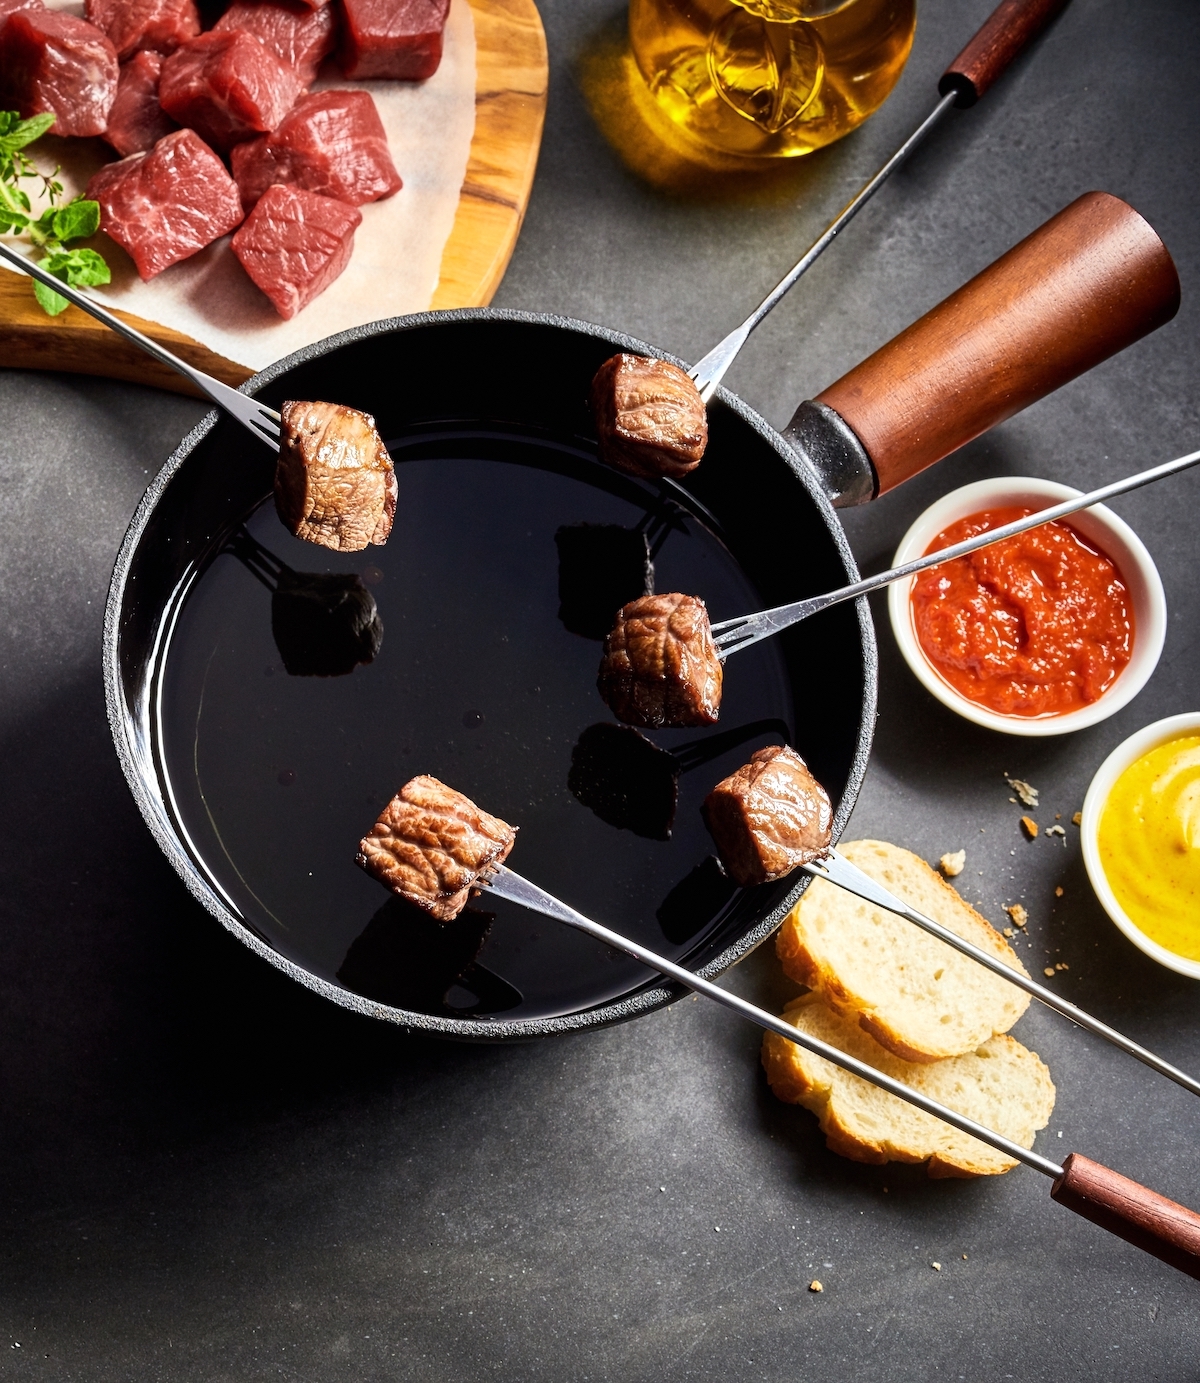 La fondue bourguignonne de boeuf et ses sauces - Recette par